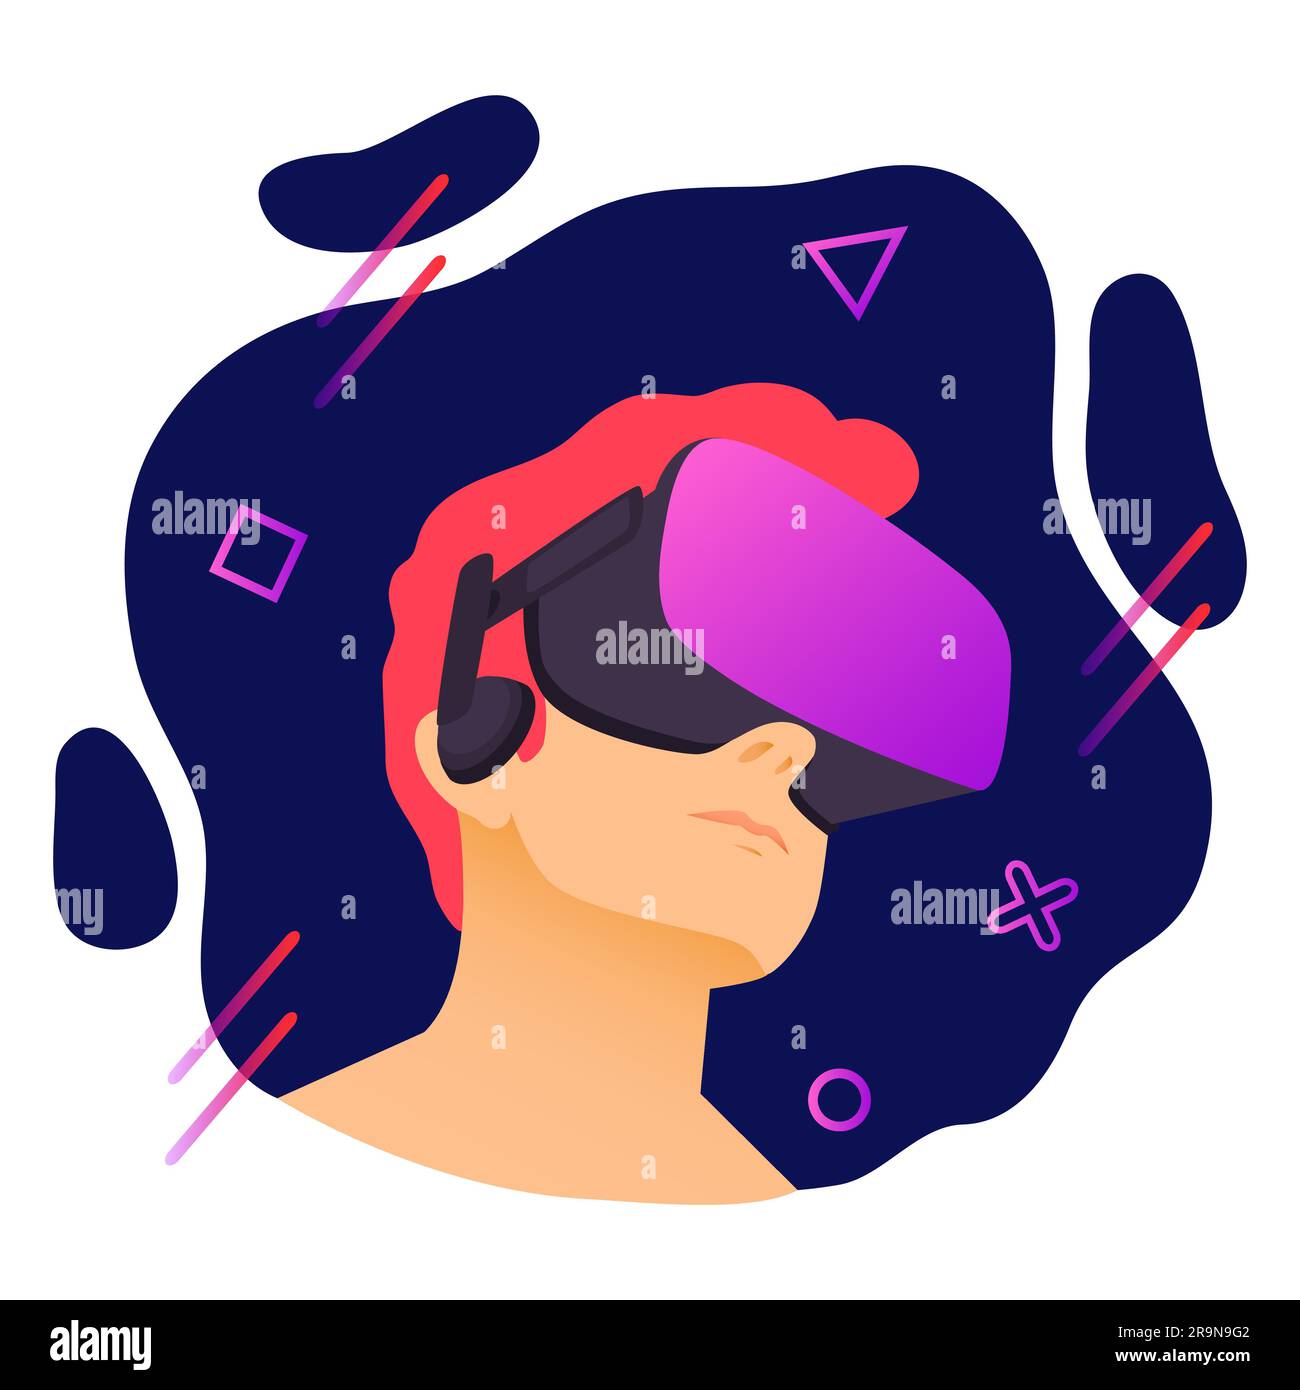 Illustration vectorielle d'un homme portant un casque de réalité virtuelle. Illustration VR moderne abstraite avec éléments géométriques de style plat Illustration de Vecteur